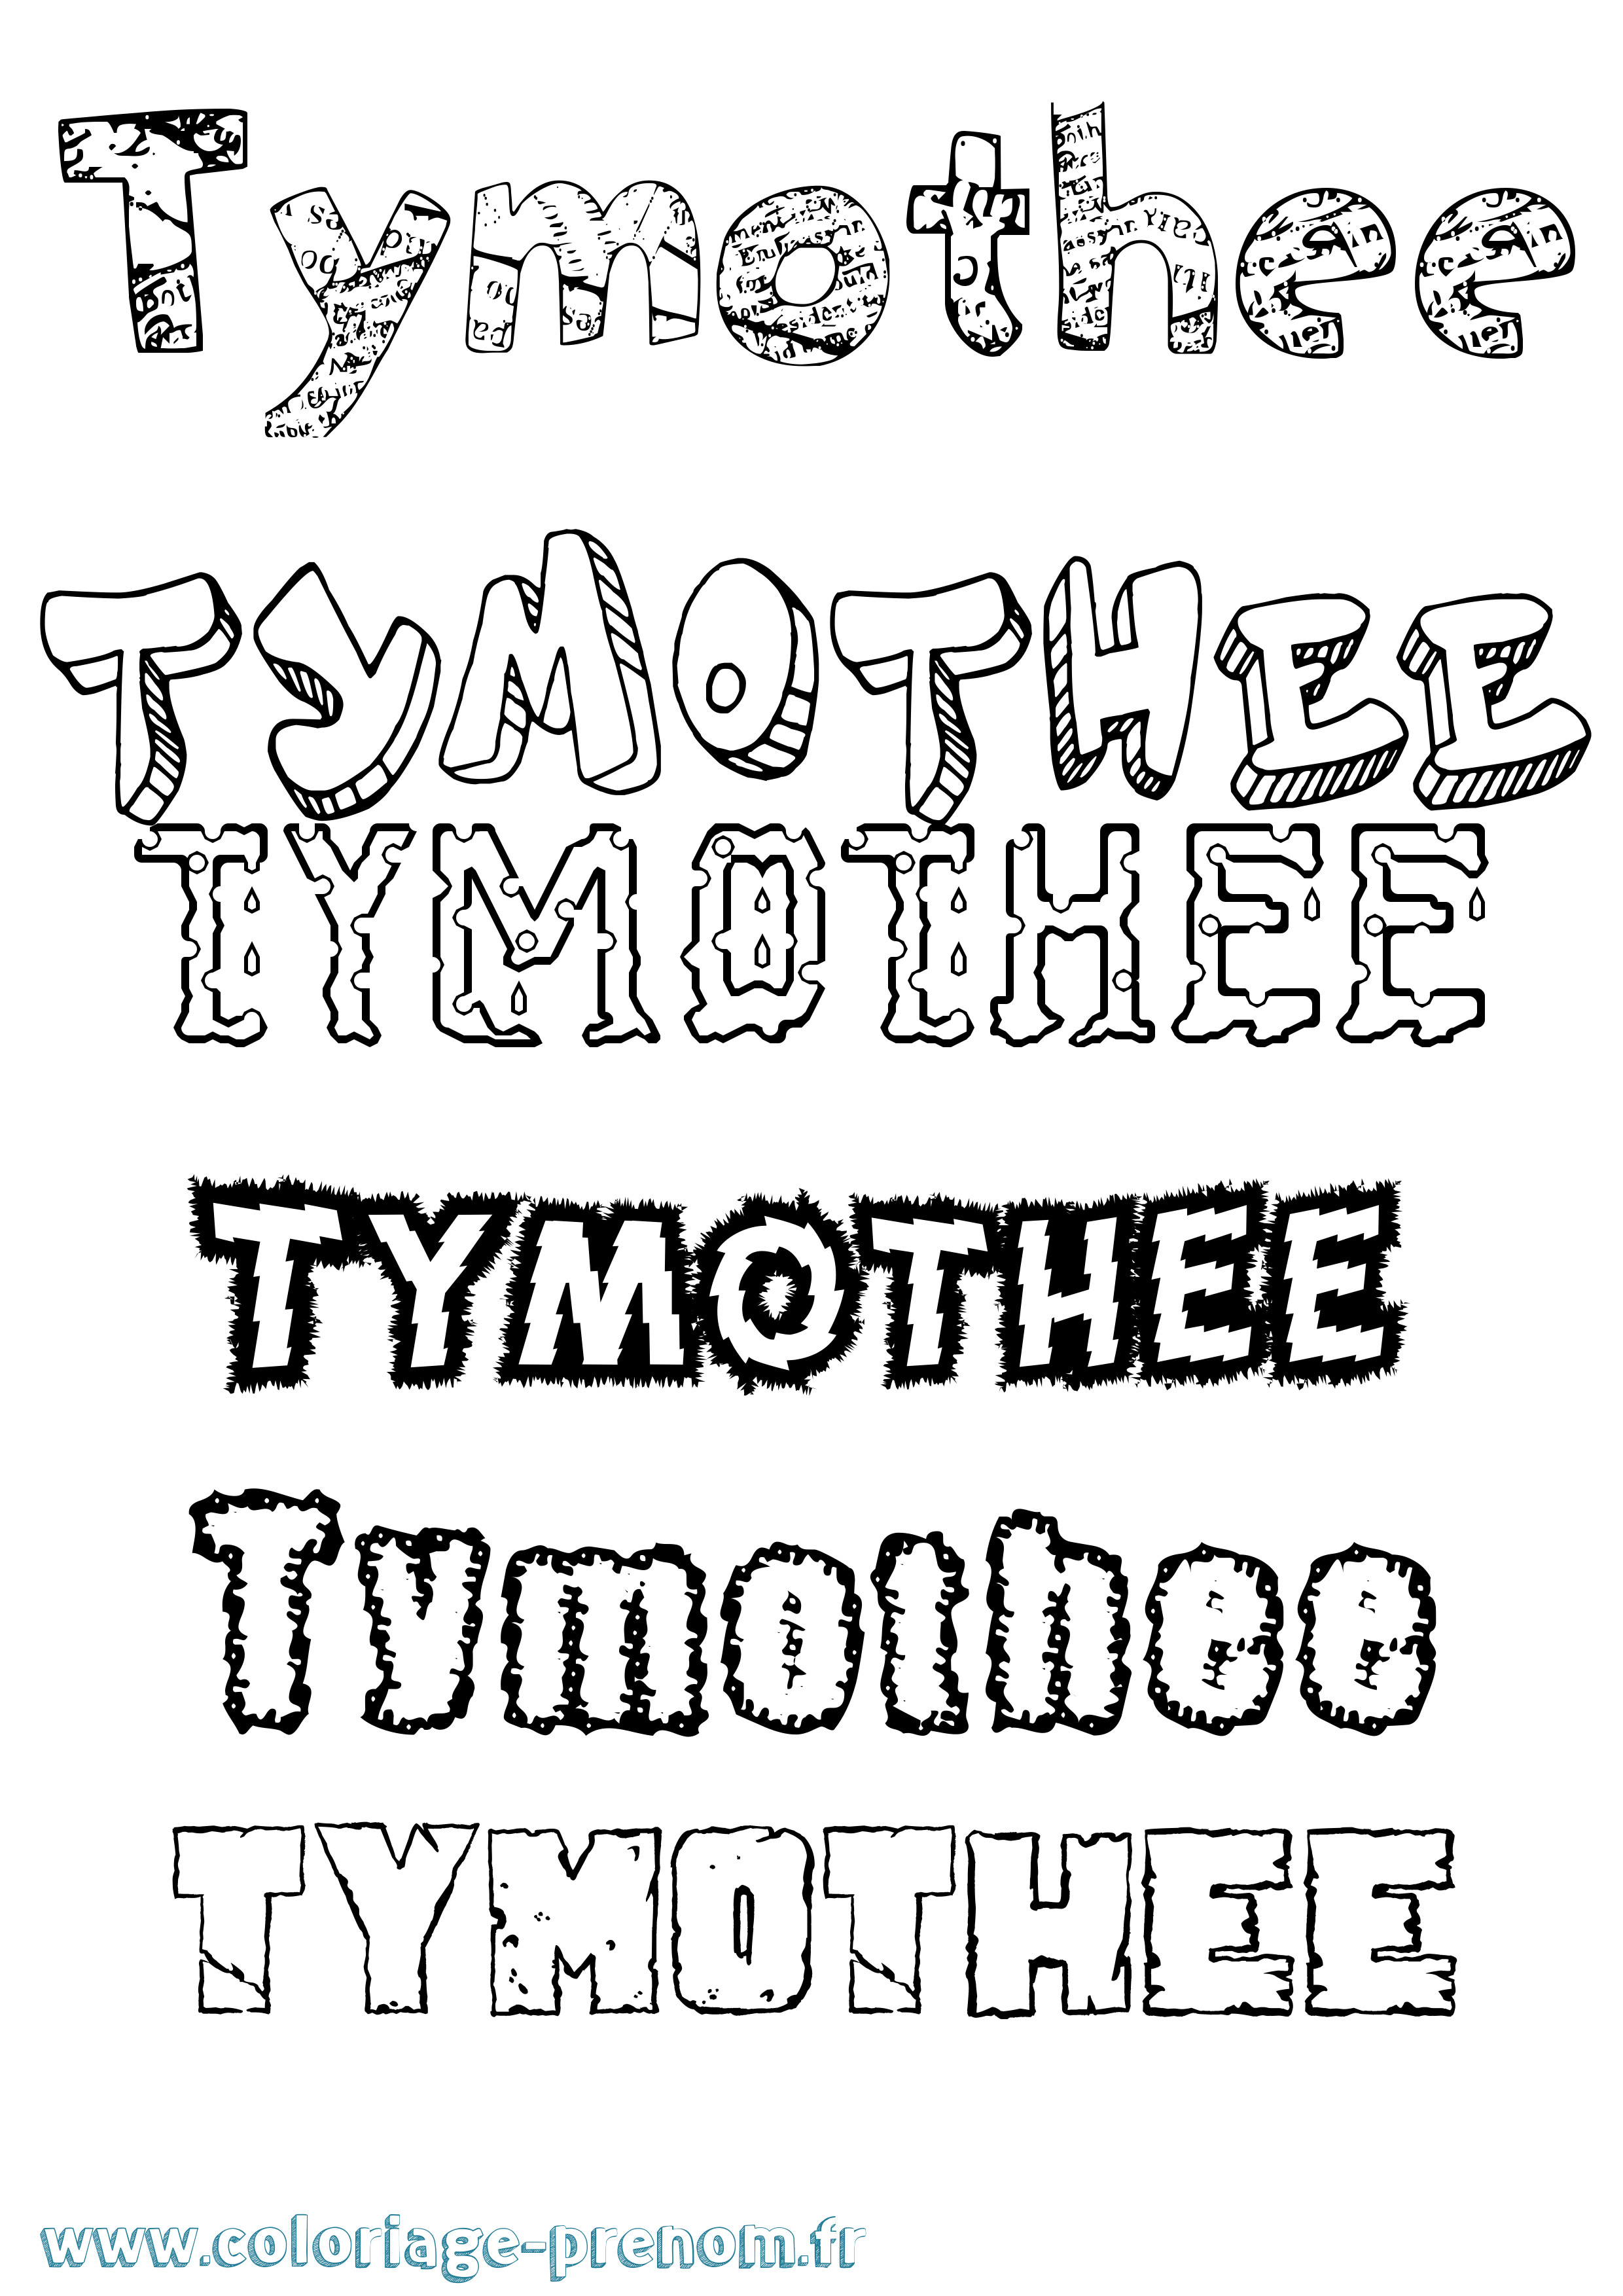 Coloriage prénom Tymothee Destructuré